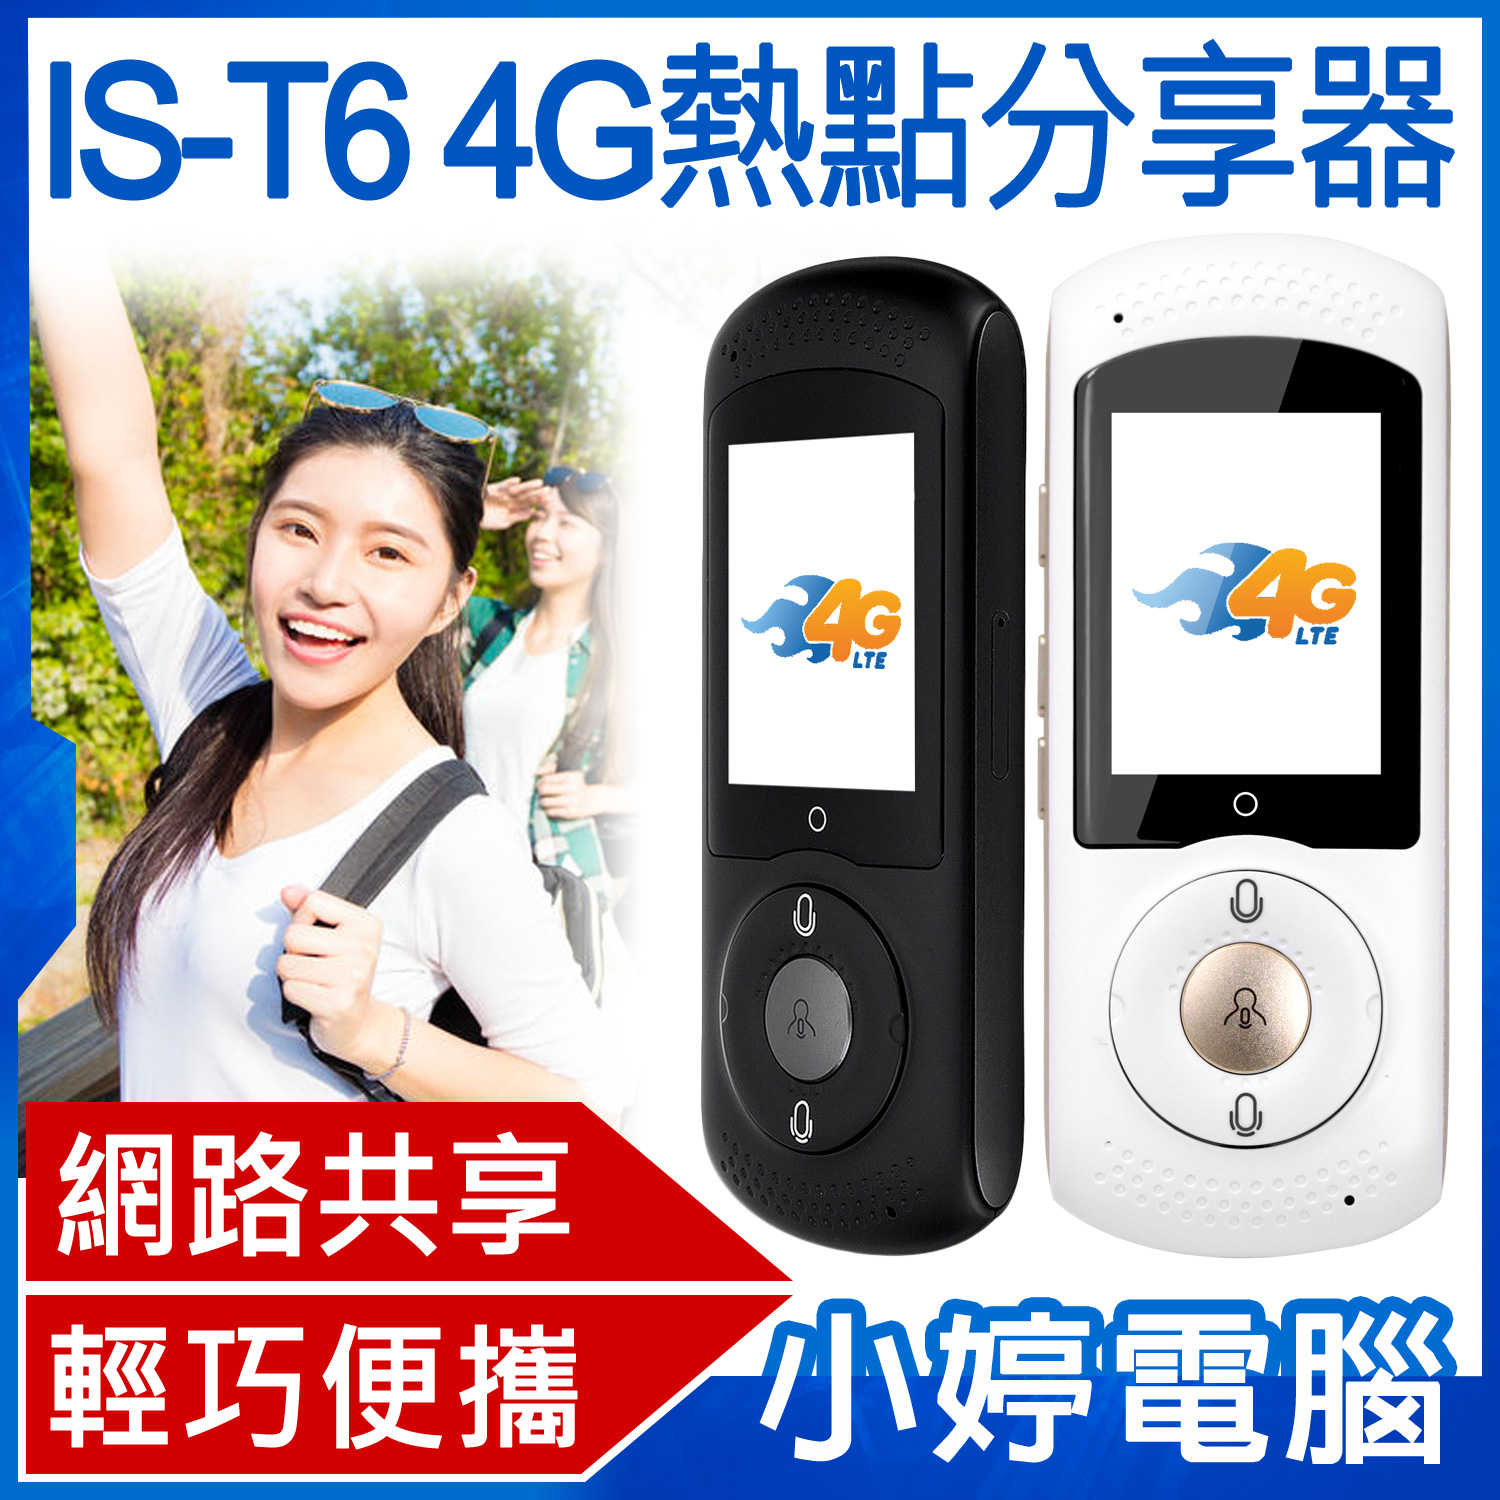 【小婷電腦】IS-T6 4G熱點分享器 便攜式無線路由器 移動WiFi上網 觸控螢幕 輕巧便攜